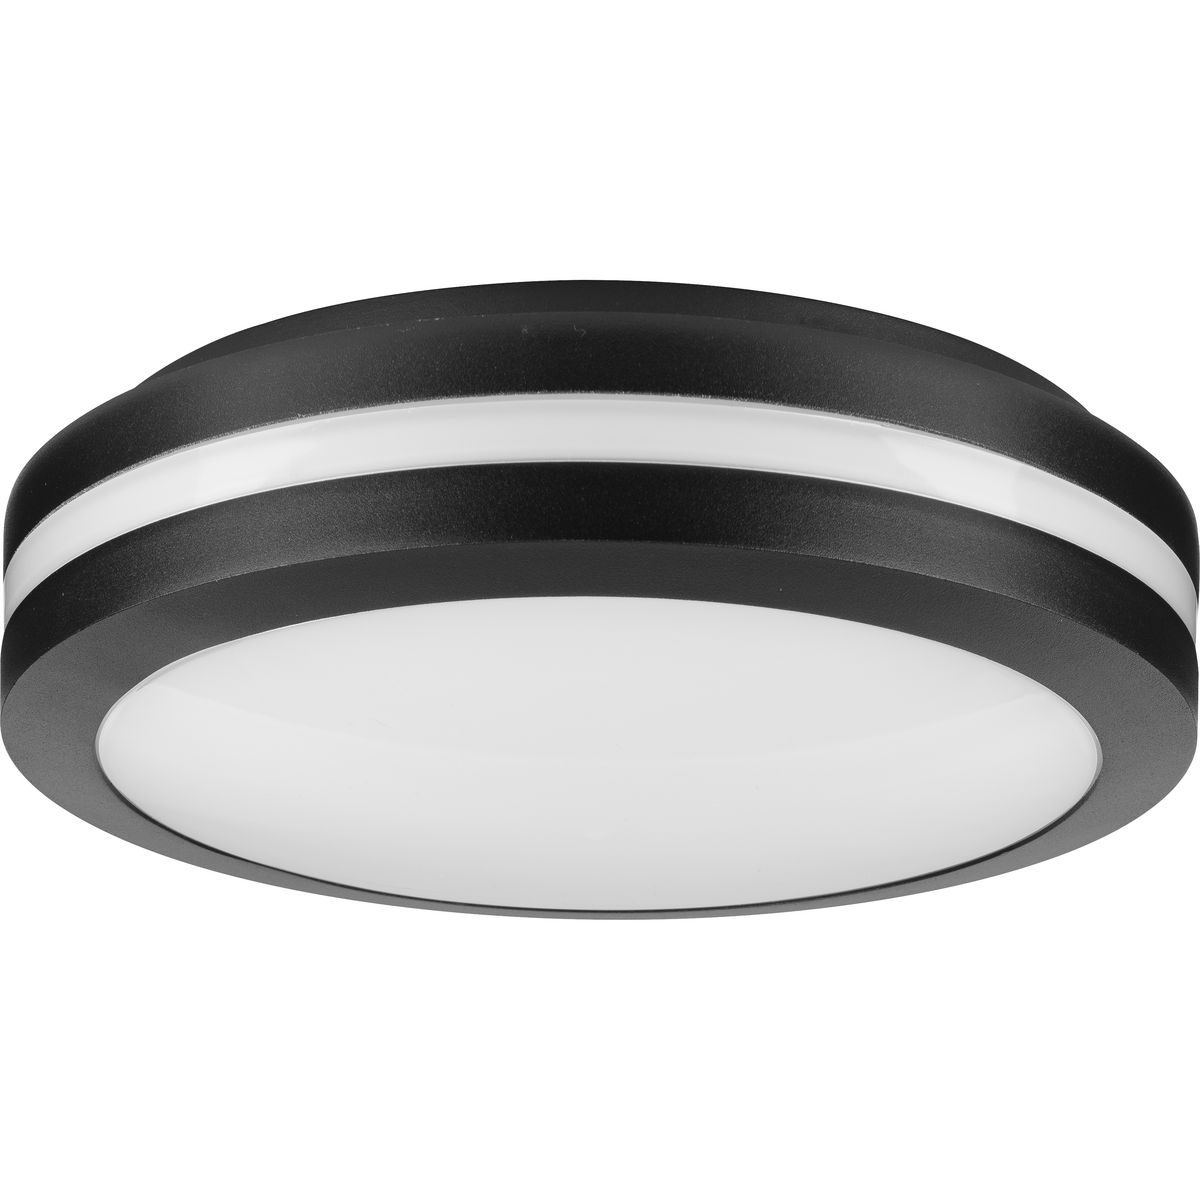 Hard Nox 1-Light 11.9-in Black LED Flush Mount Light | - Progress Lighting P550112-031-30